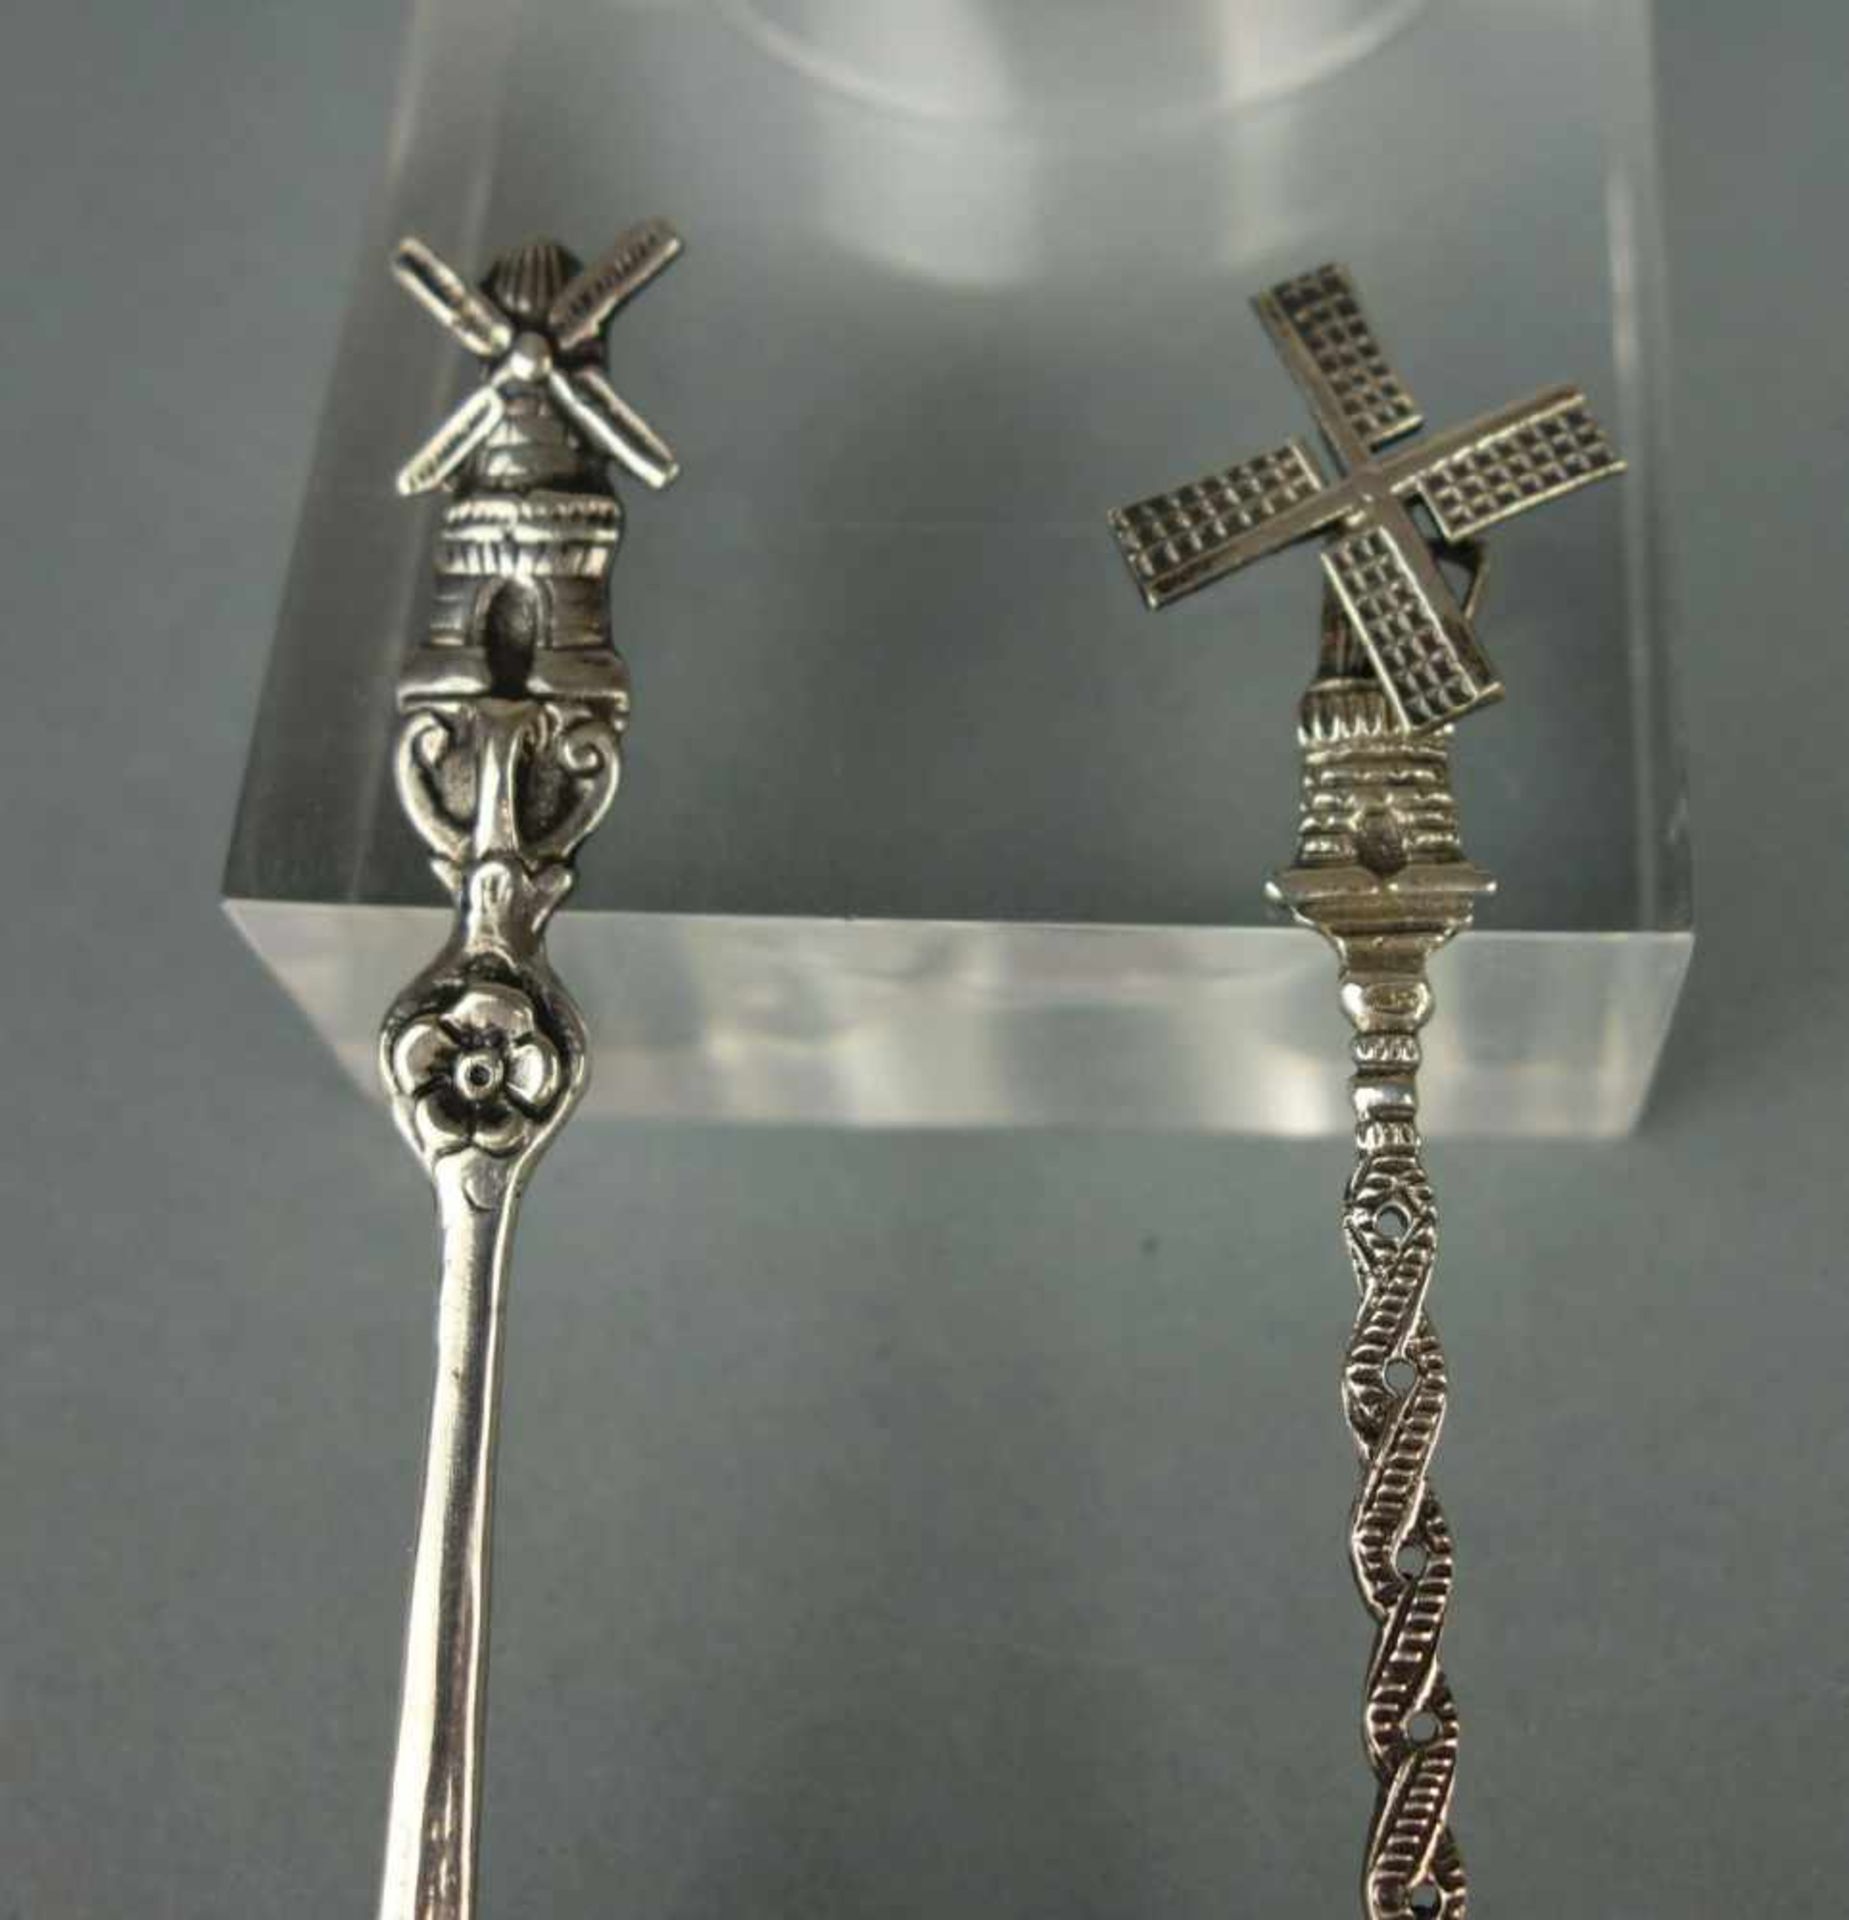 2 SILBERLÖFFEL: ZUCKERSCHAUFEL UND KLEINER LÖFFEL MIT BEWEGLICHEM WINDRAD / silver spoons, 20. - Image 2 of 6